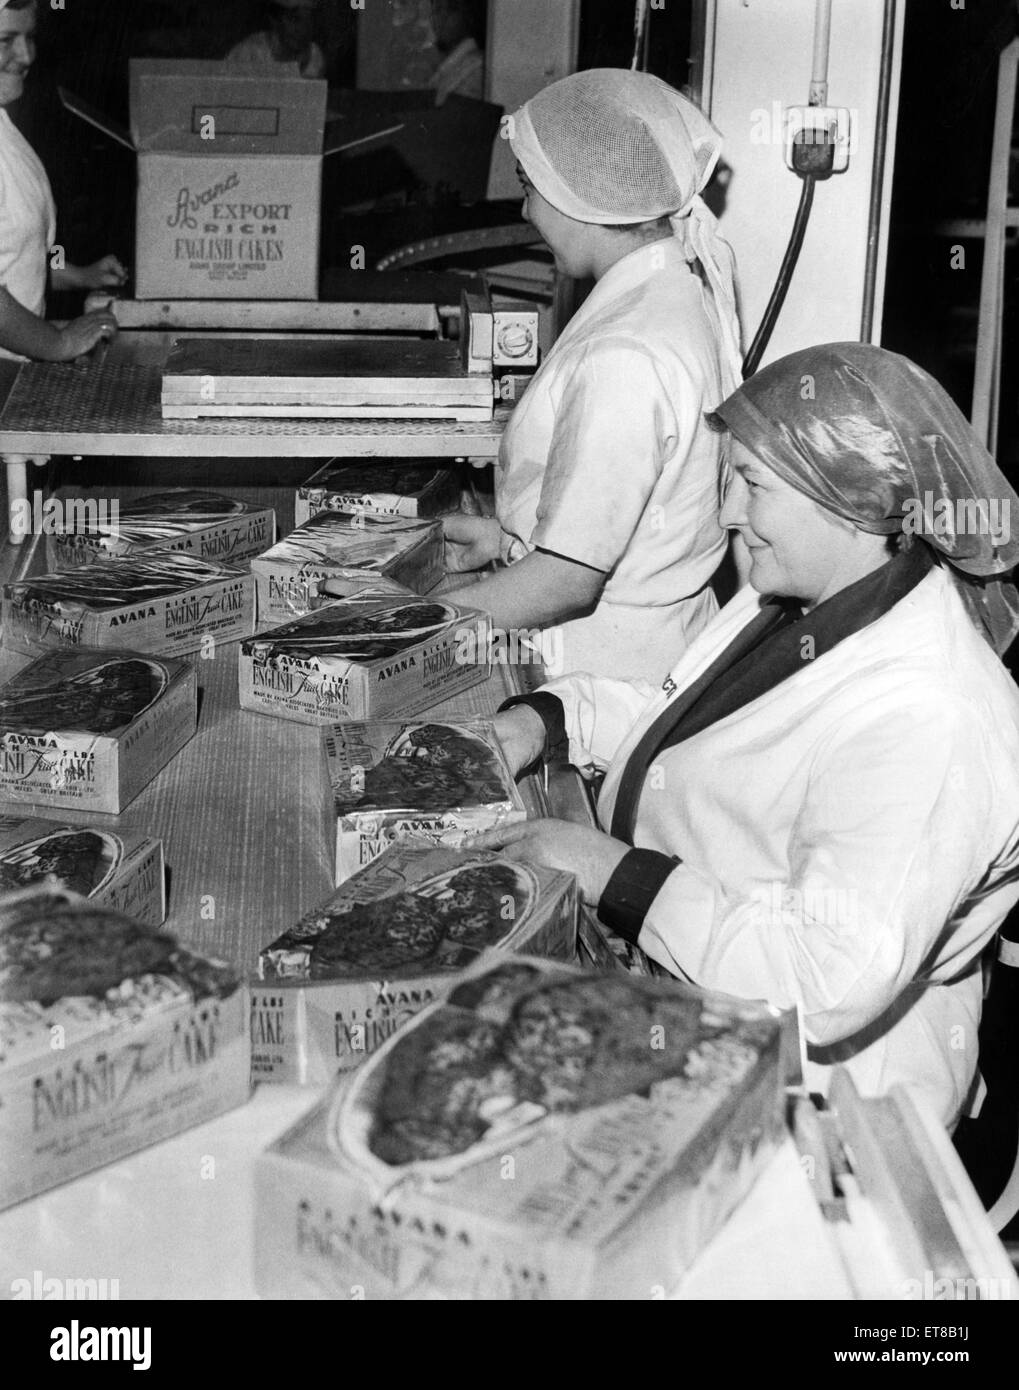 Onorevole M Irlanda (a destra) e perdere i Pesticcio al lavoro sulla torta di esportazione in banda L'Avana panificio, Cardiff. Il 20 gennaio 1965. Foto Stock